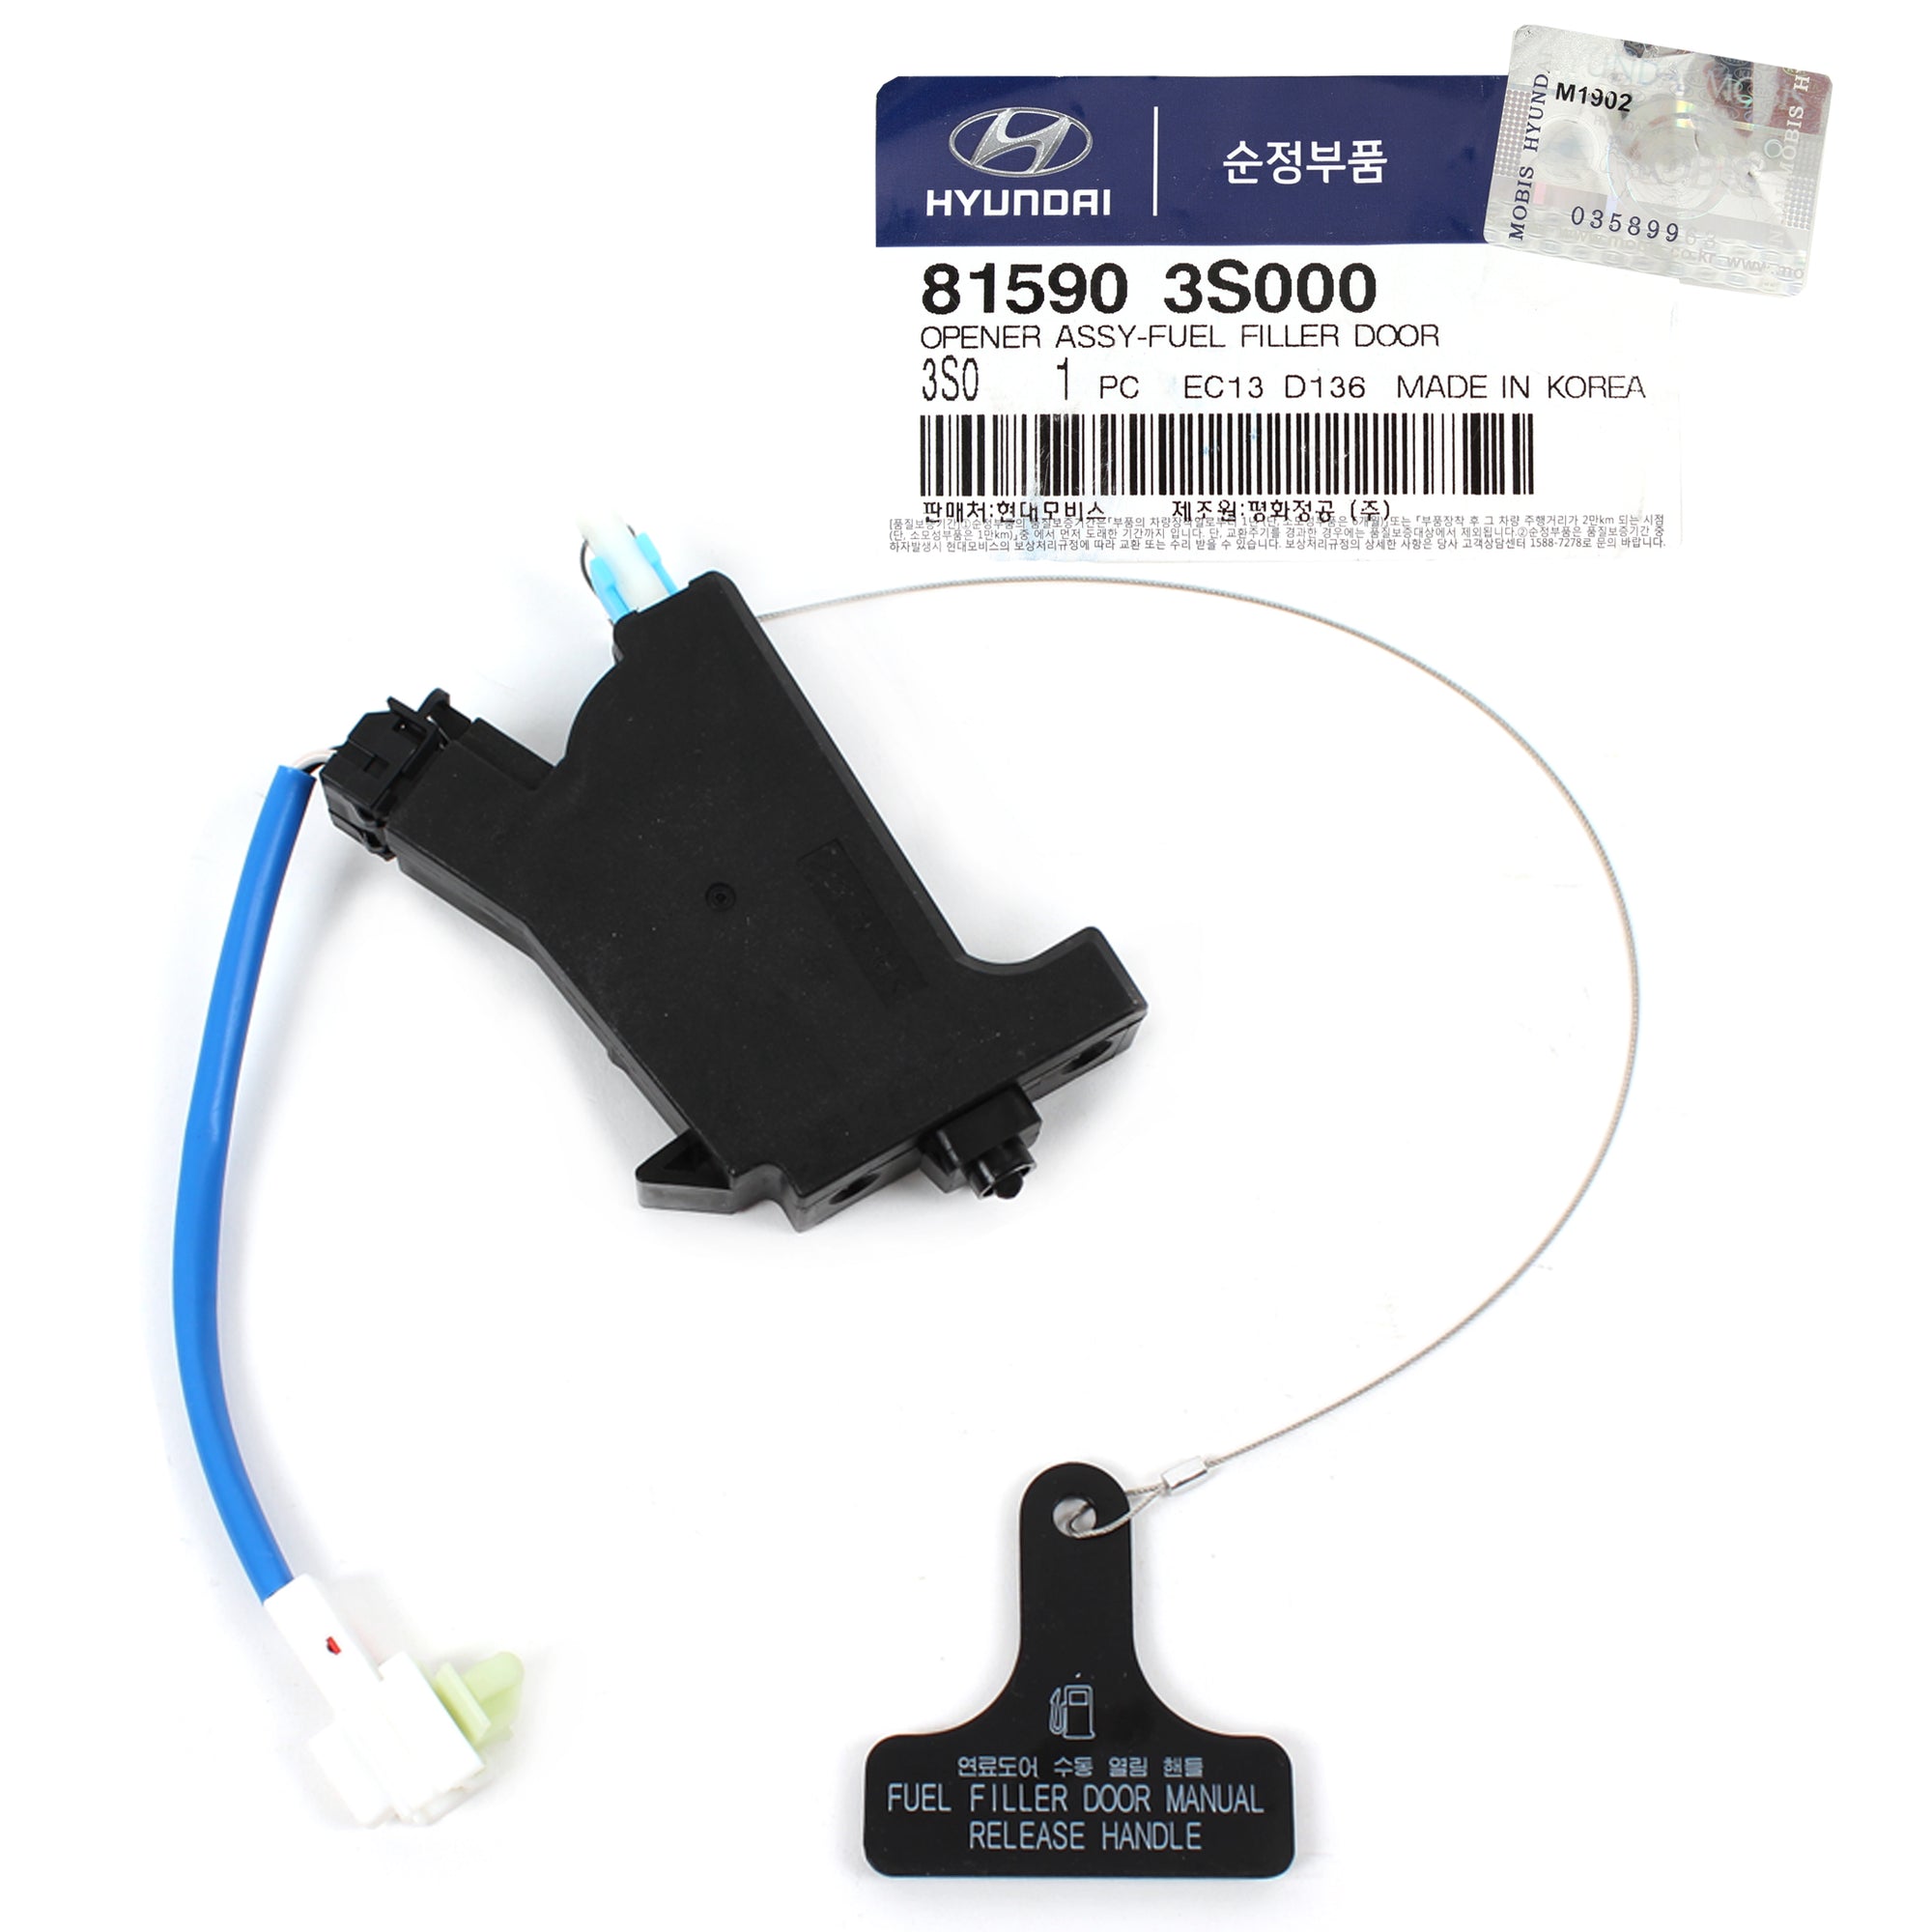 GENUINE Fuel Filler Door Opener for 2011-2015 Hyundai Sonata OEM 815903S000